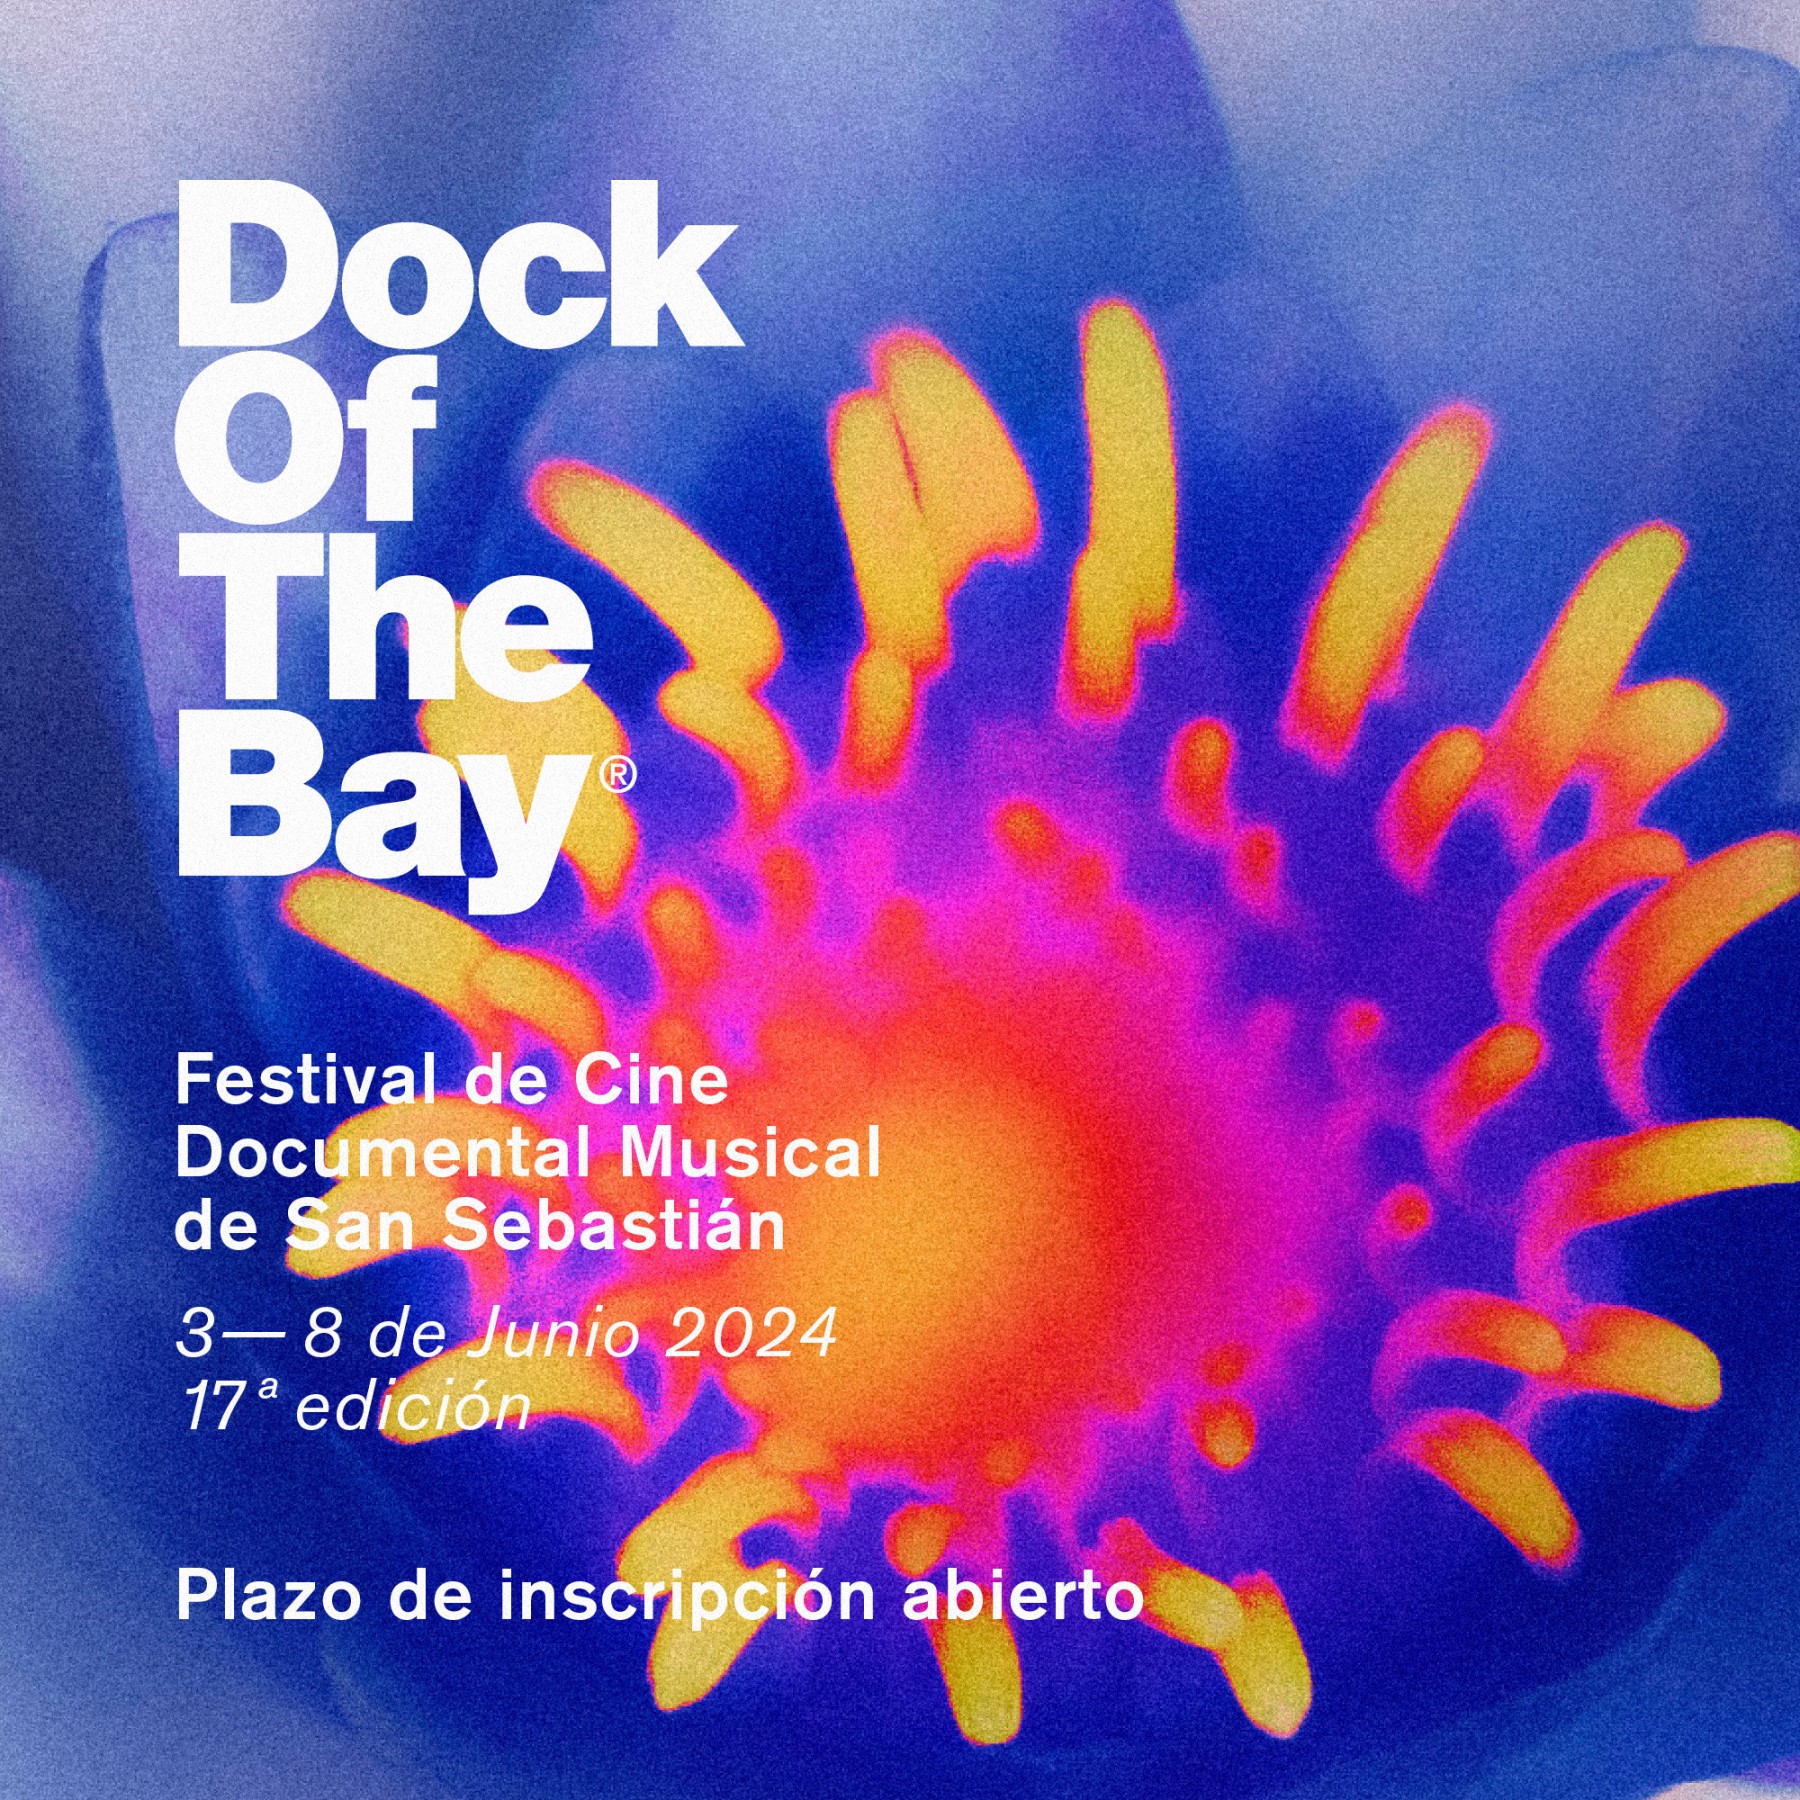 Dock of the Bay Musika Dokumentalen Jaialdia 2024ko ekainaren 3tik 8ra egingo da, eta sail ofizialetan izena emateko epea ireki du.